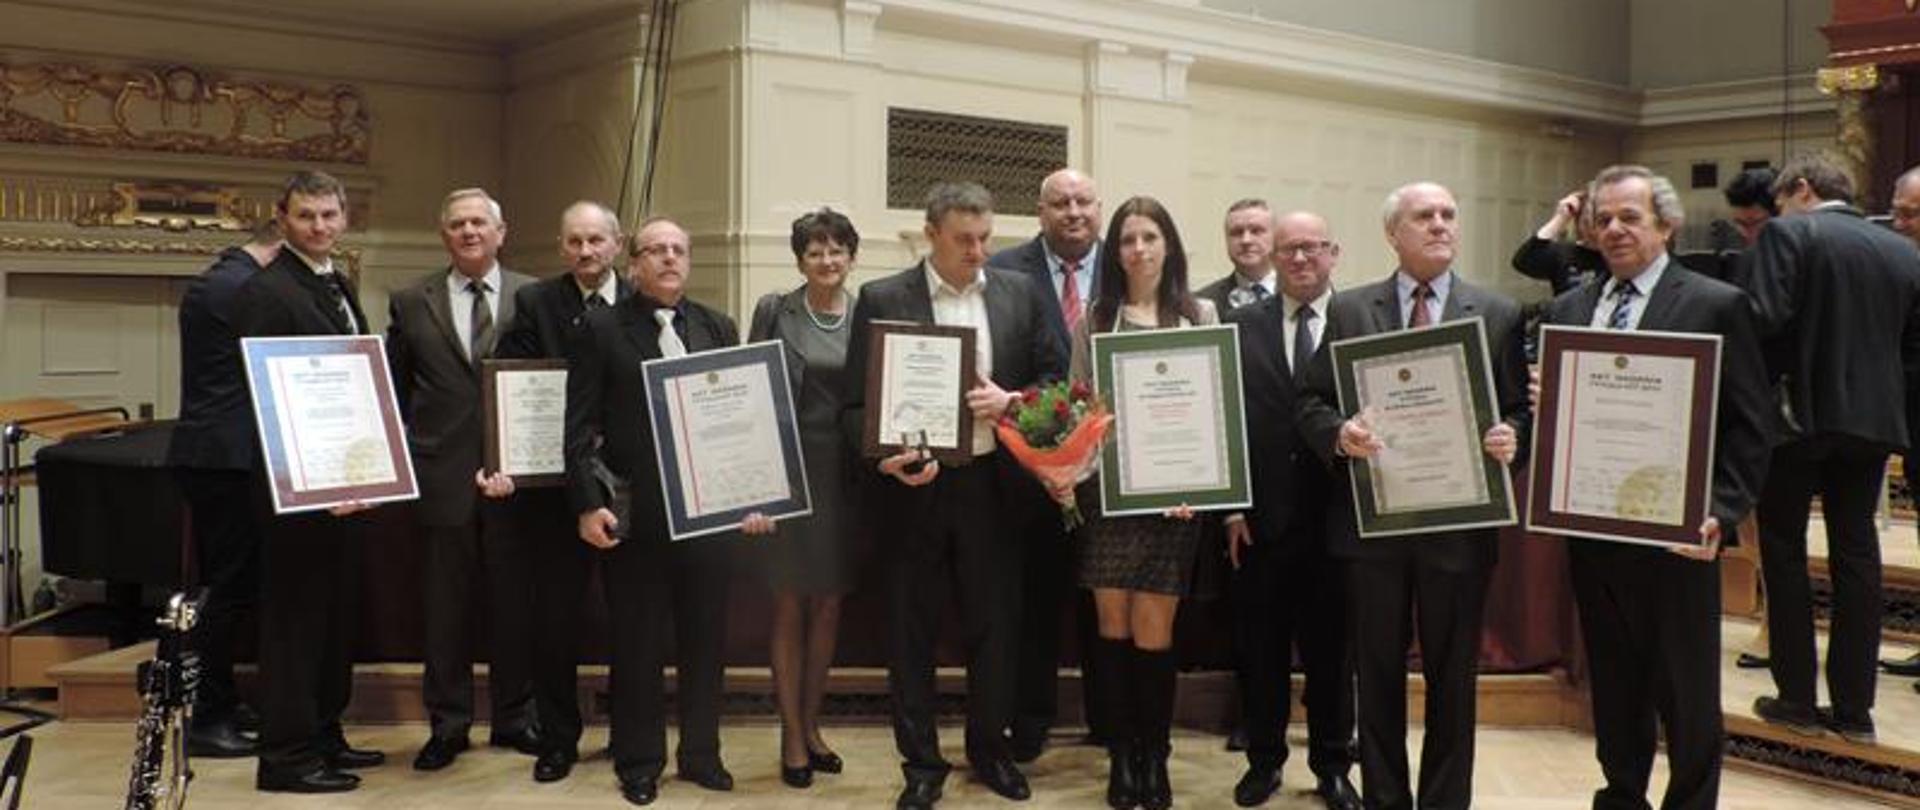 Gmina Kaczory otrzymała nagrodę jakości „HIT 2015”